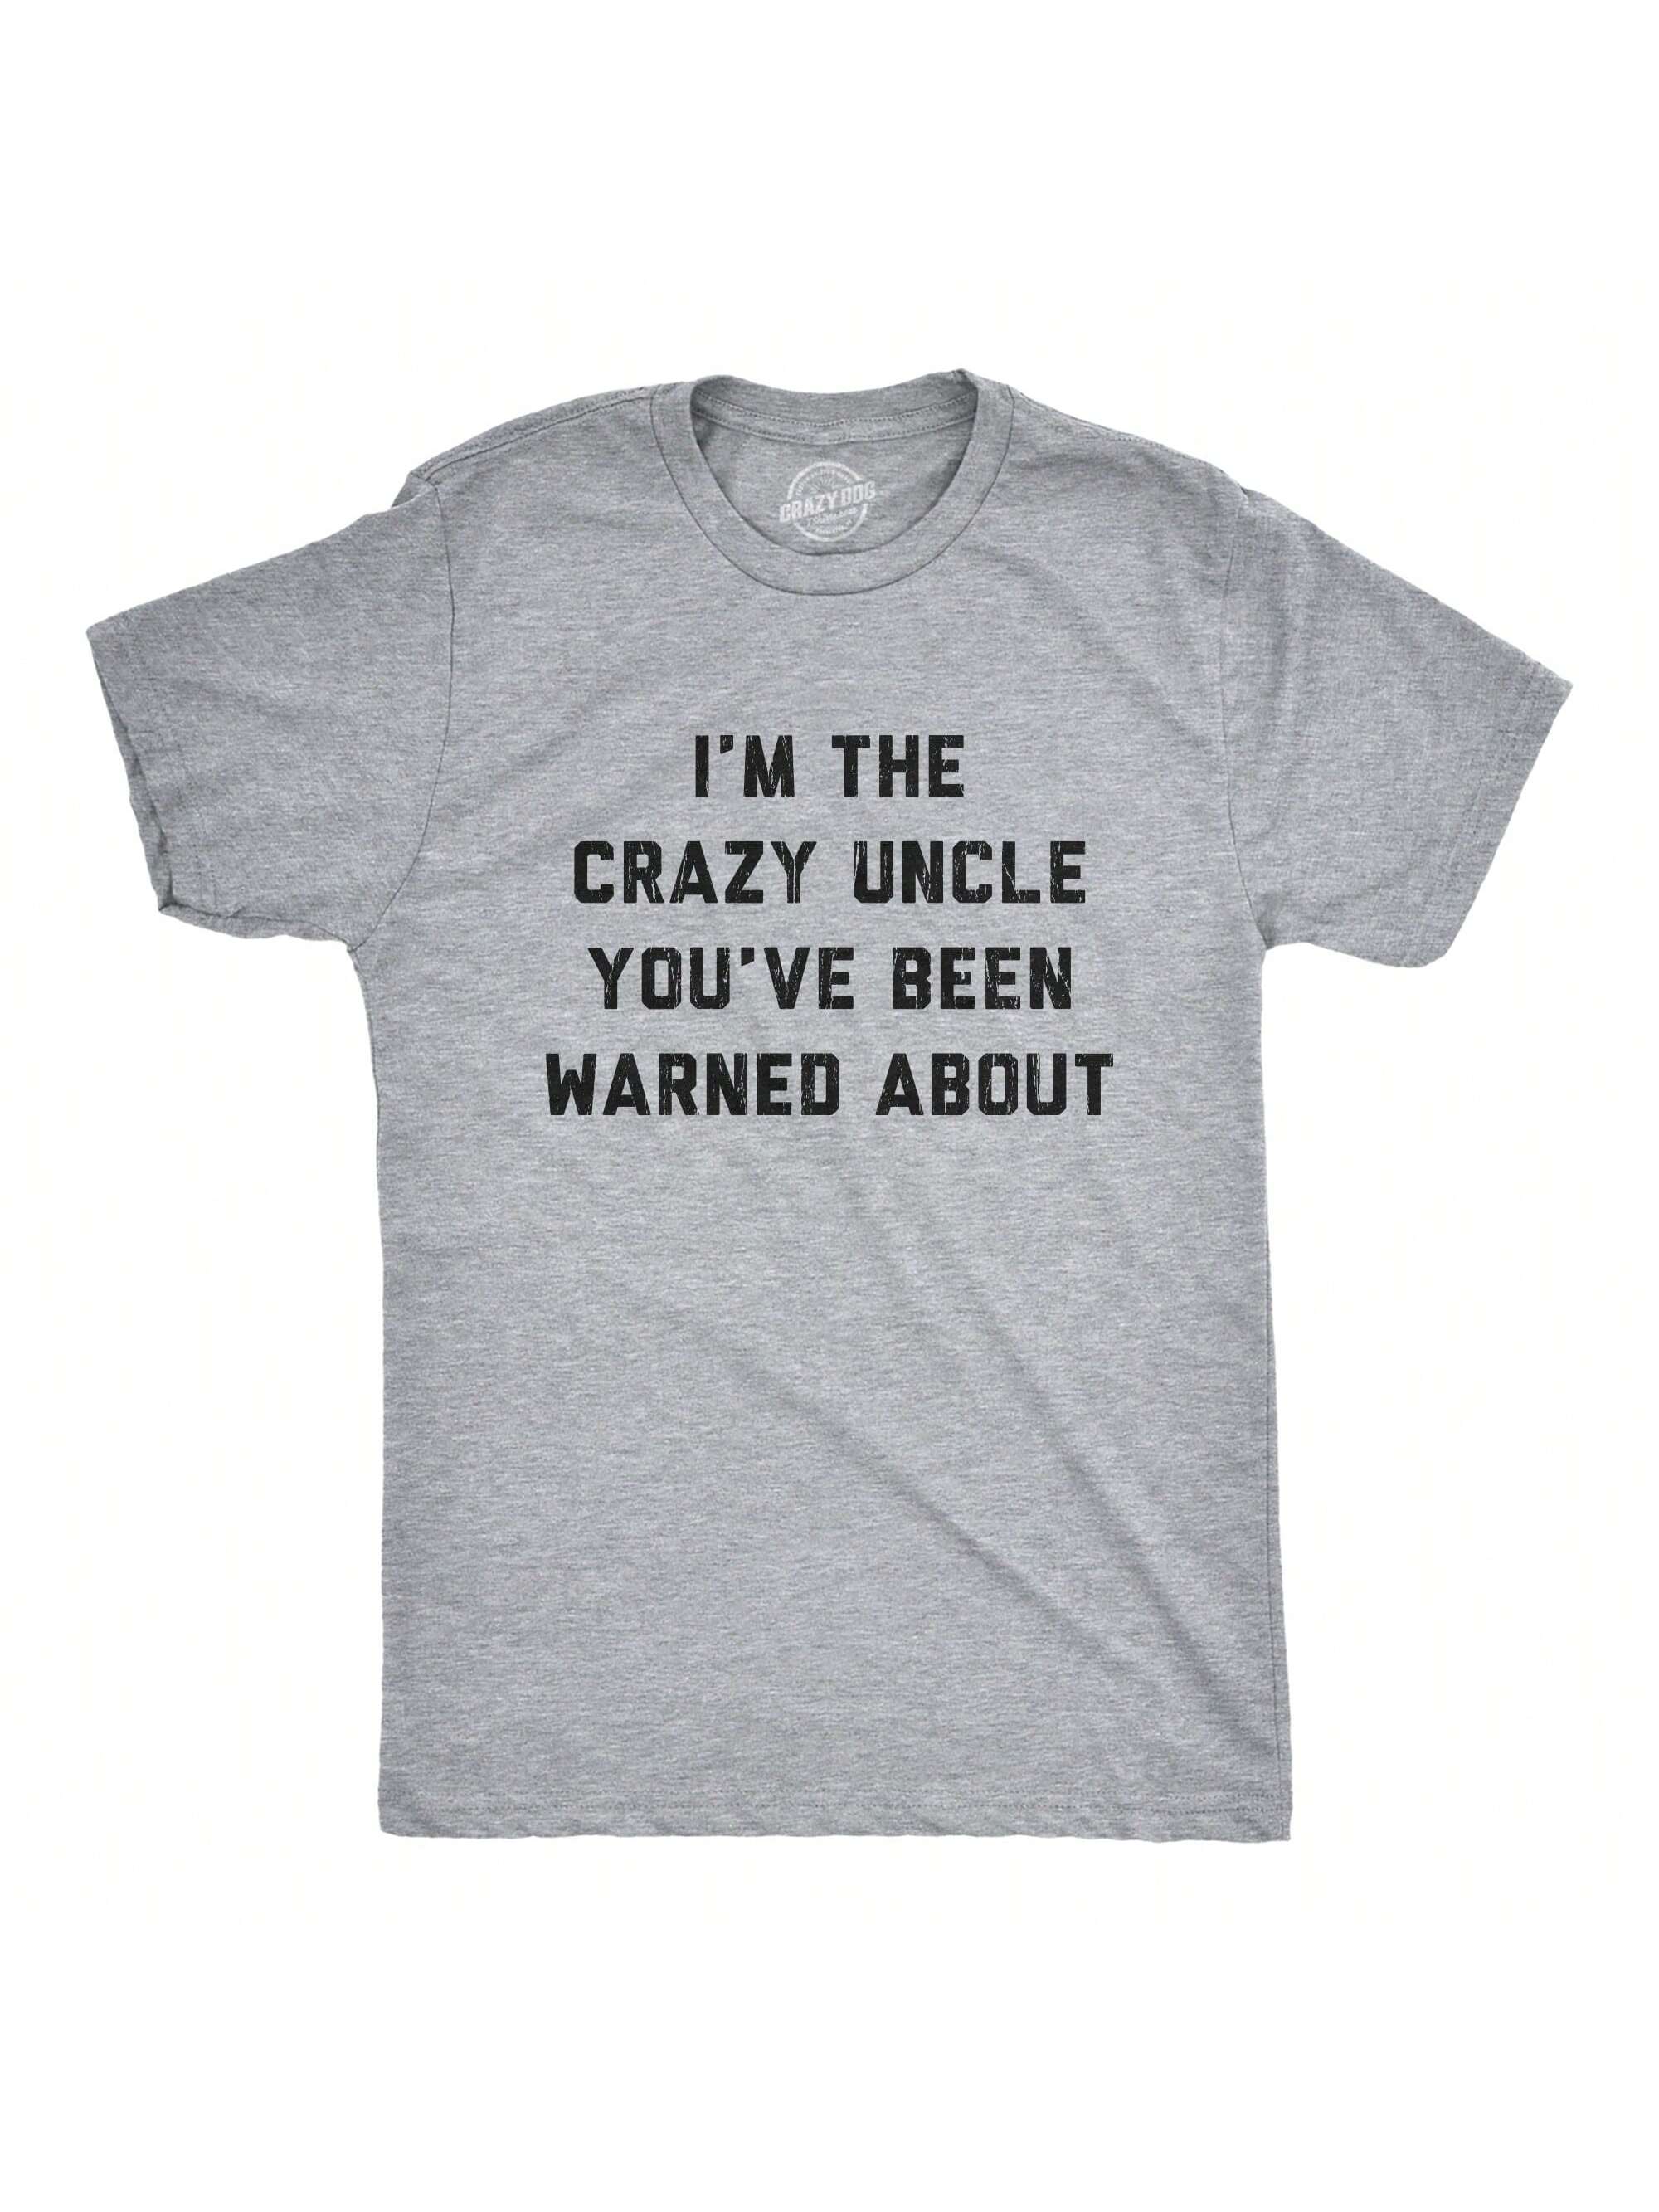 Мужская футболка «Они не мои» «Я дядя», светлый хизер грей - сумасшедший дядя